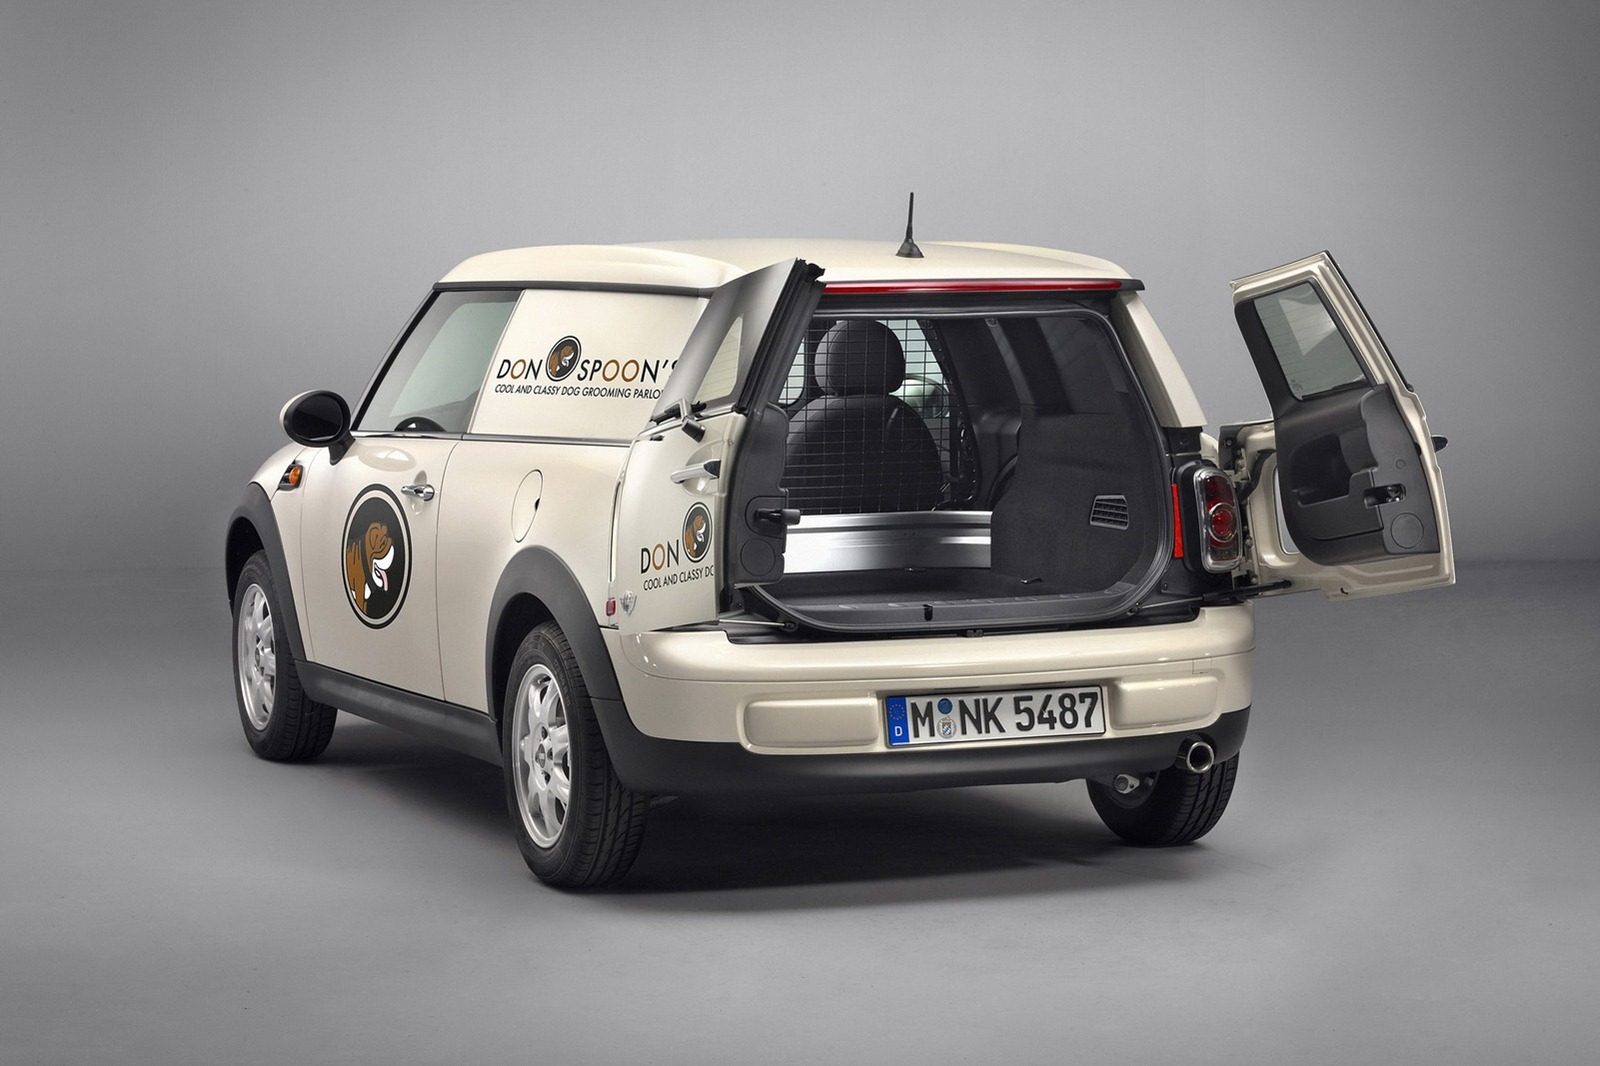 Spatiul de incarcare al lui Mini Clubvan are 115 cm lungime si o capacitate de peste 800 litri